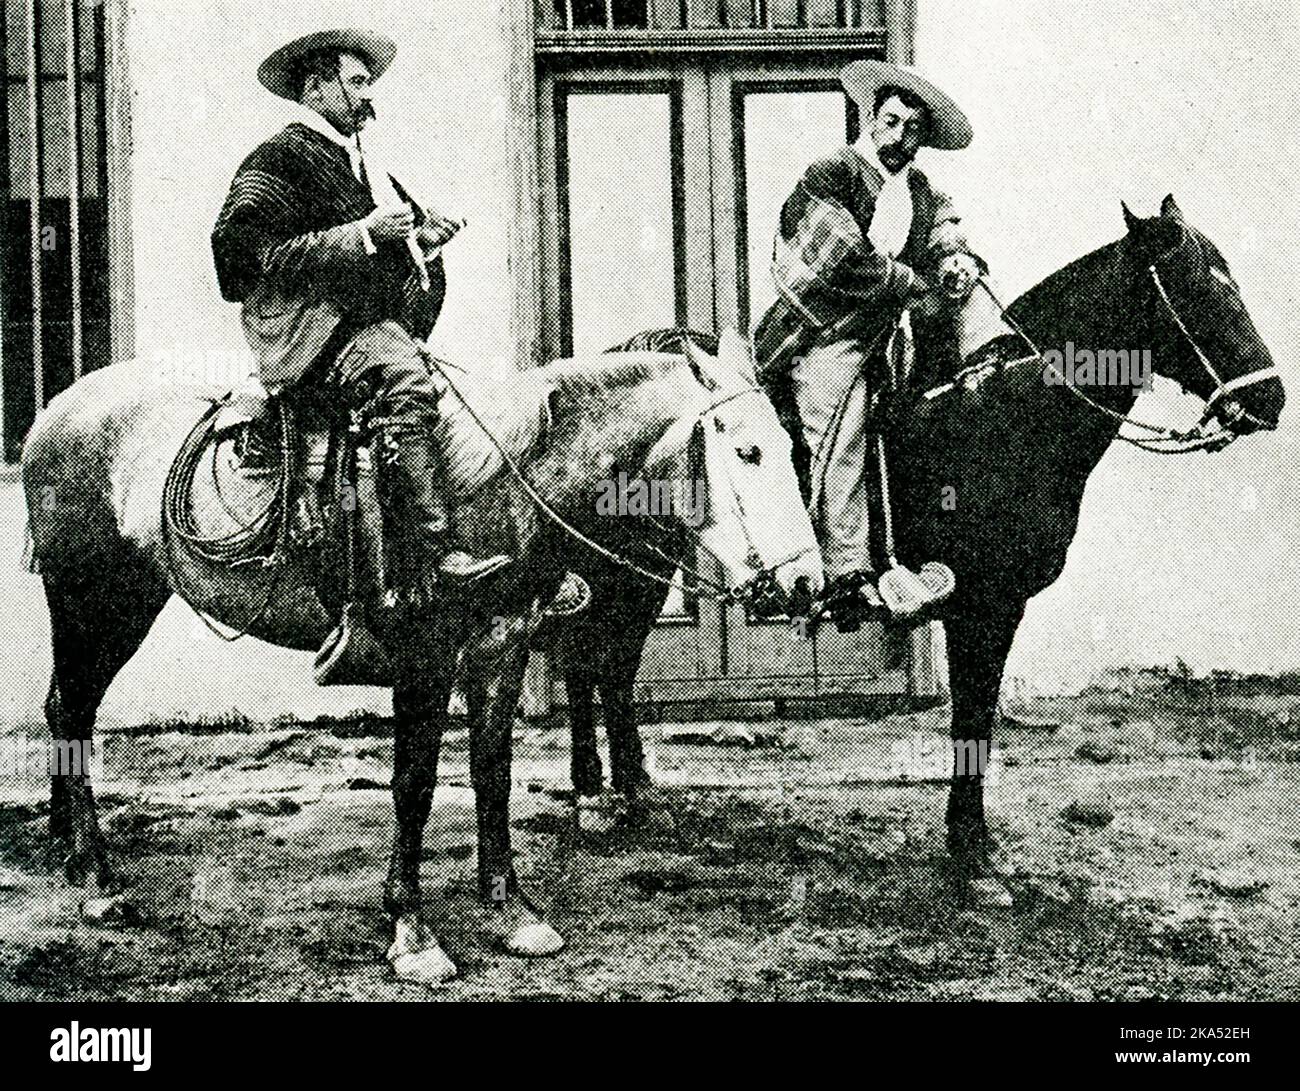 Questa illustrazione del 1914 mostra due cavaliere (o cowboy) in Cile. Secondo la didascalia, un cowboy o un cavaliere cileno non è mai visto senza il suo cappello rotondo largo-brimmed, il suo mantello colorato ed il suo nastro si schianta intorno alla vita. Sono noti come guasos o huasos. Foto Stock